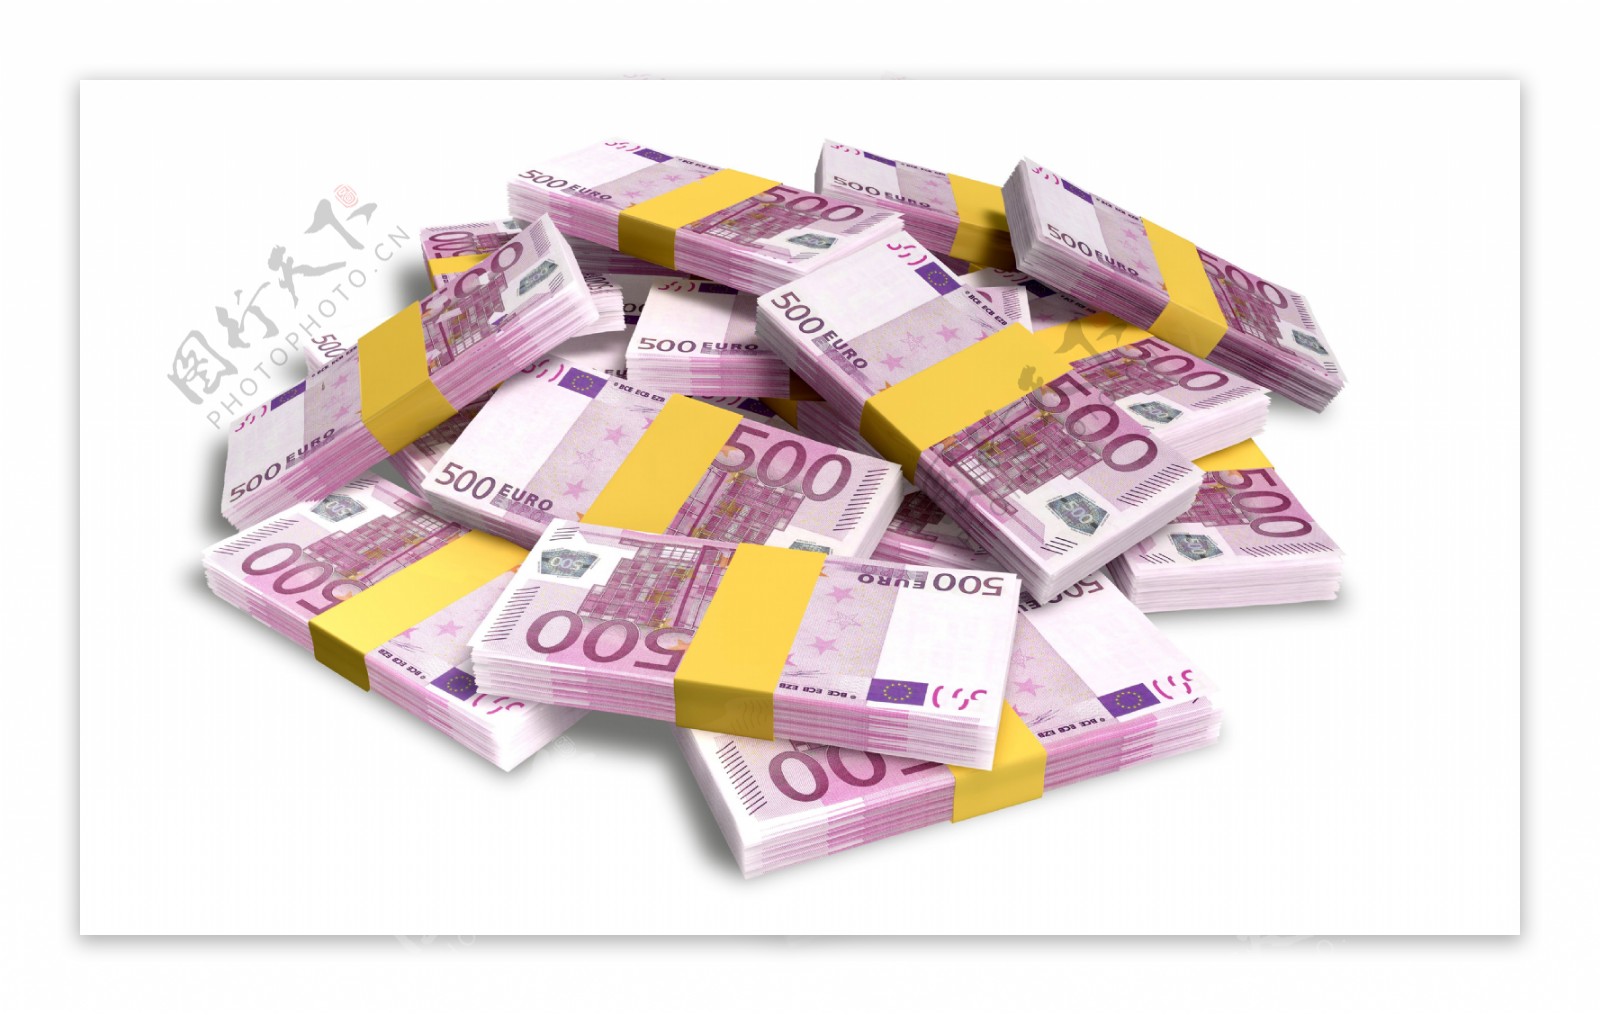 整捆堆放的500面值欧元现金图片